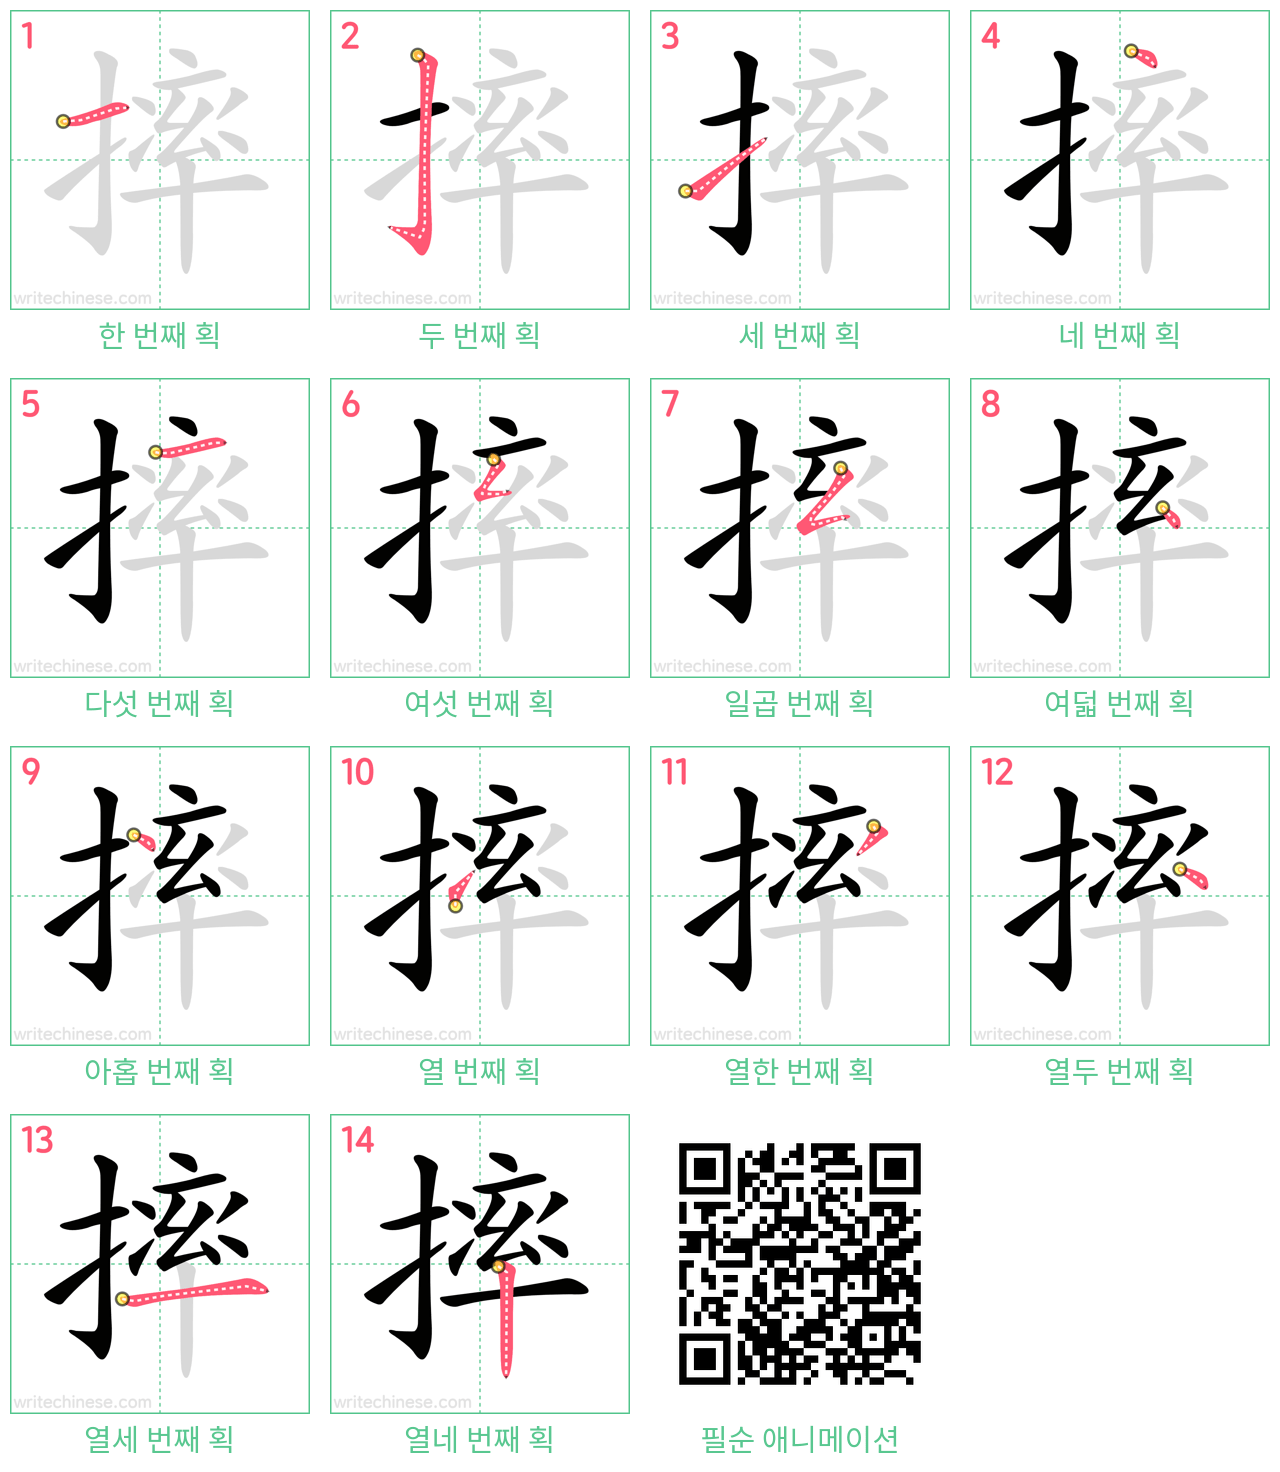 摔 step-by-step stroke order diagrams